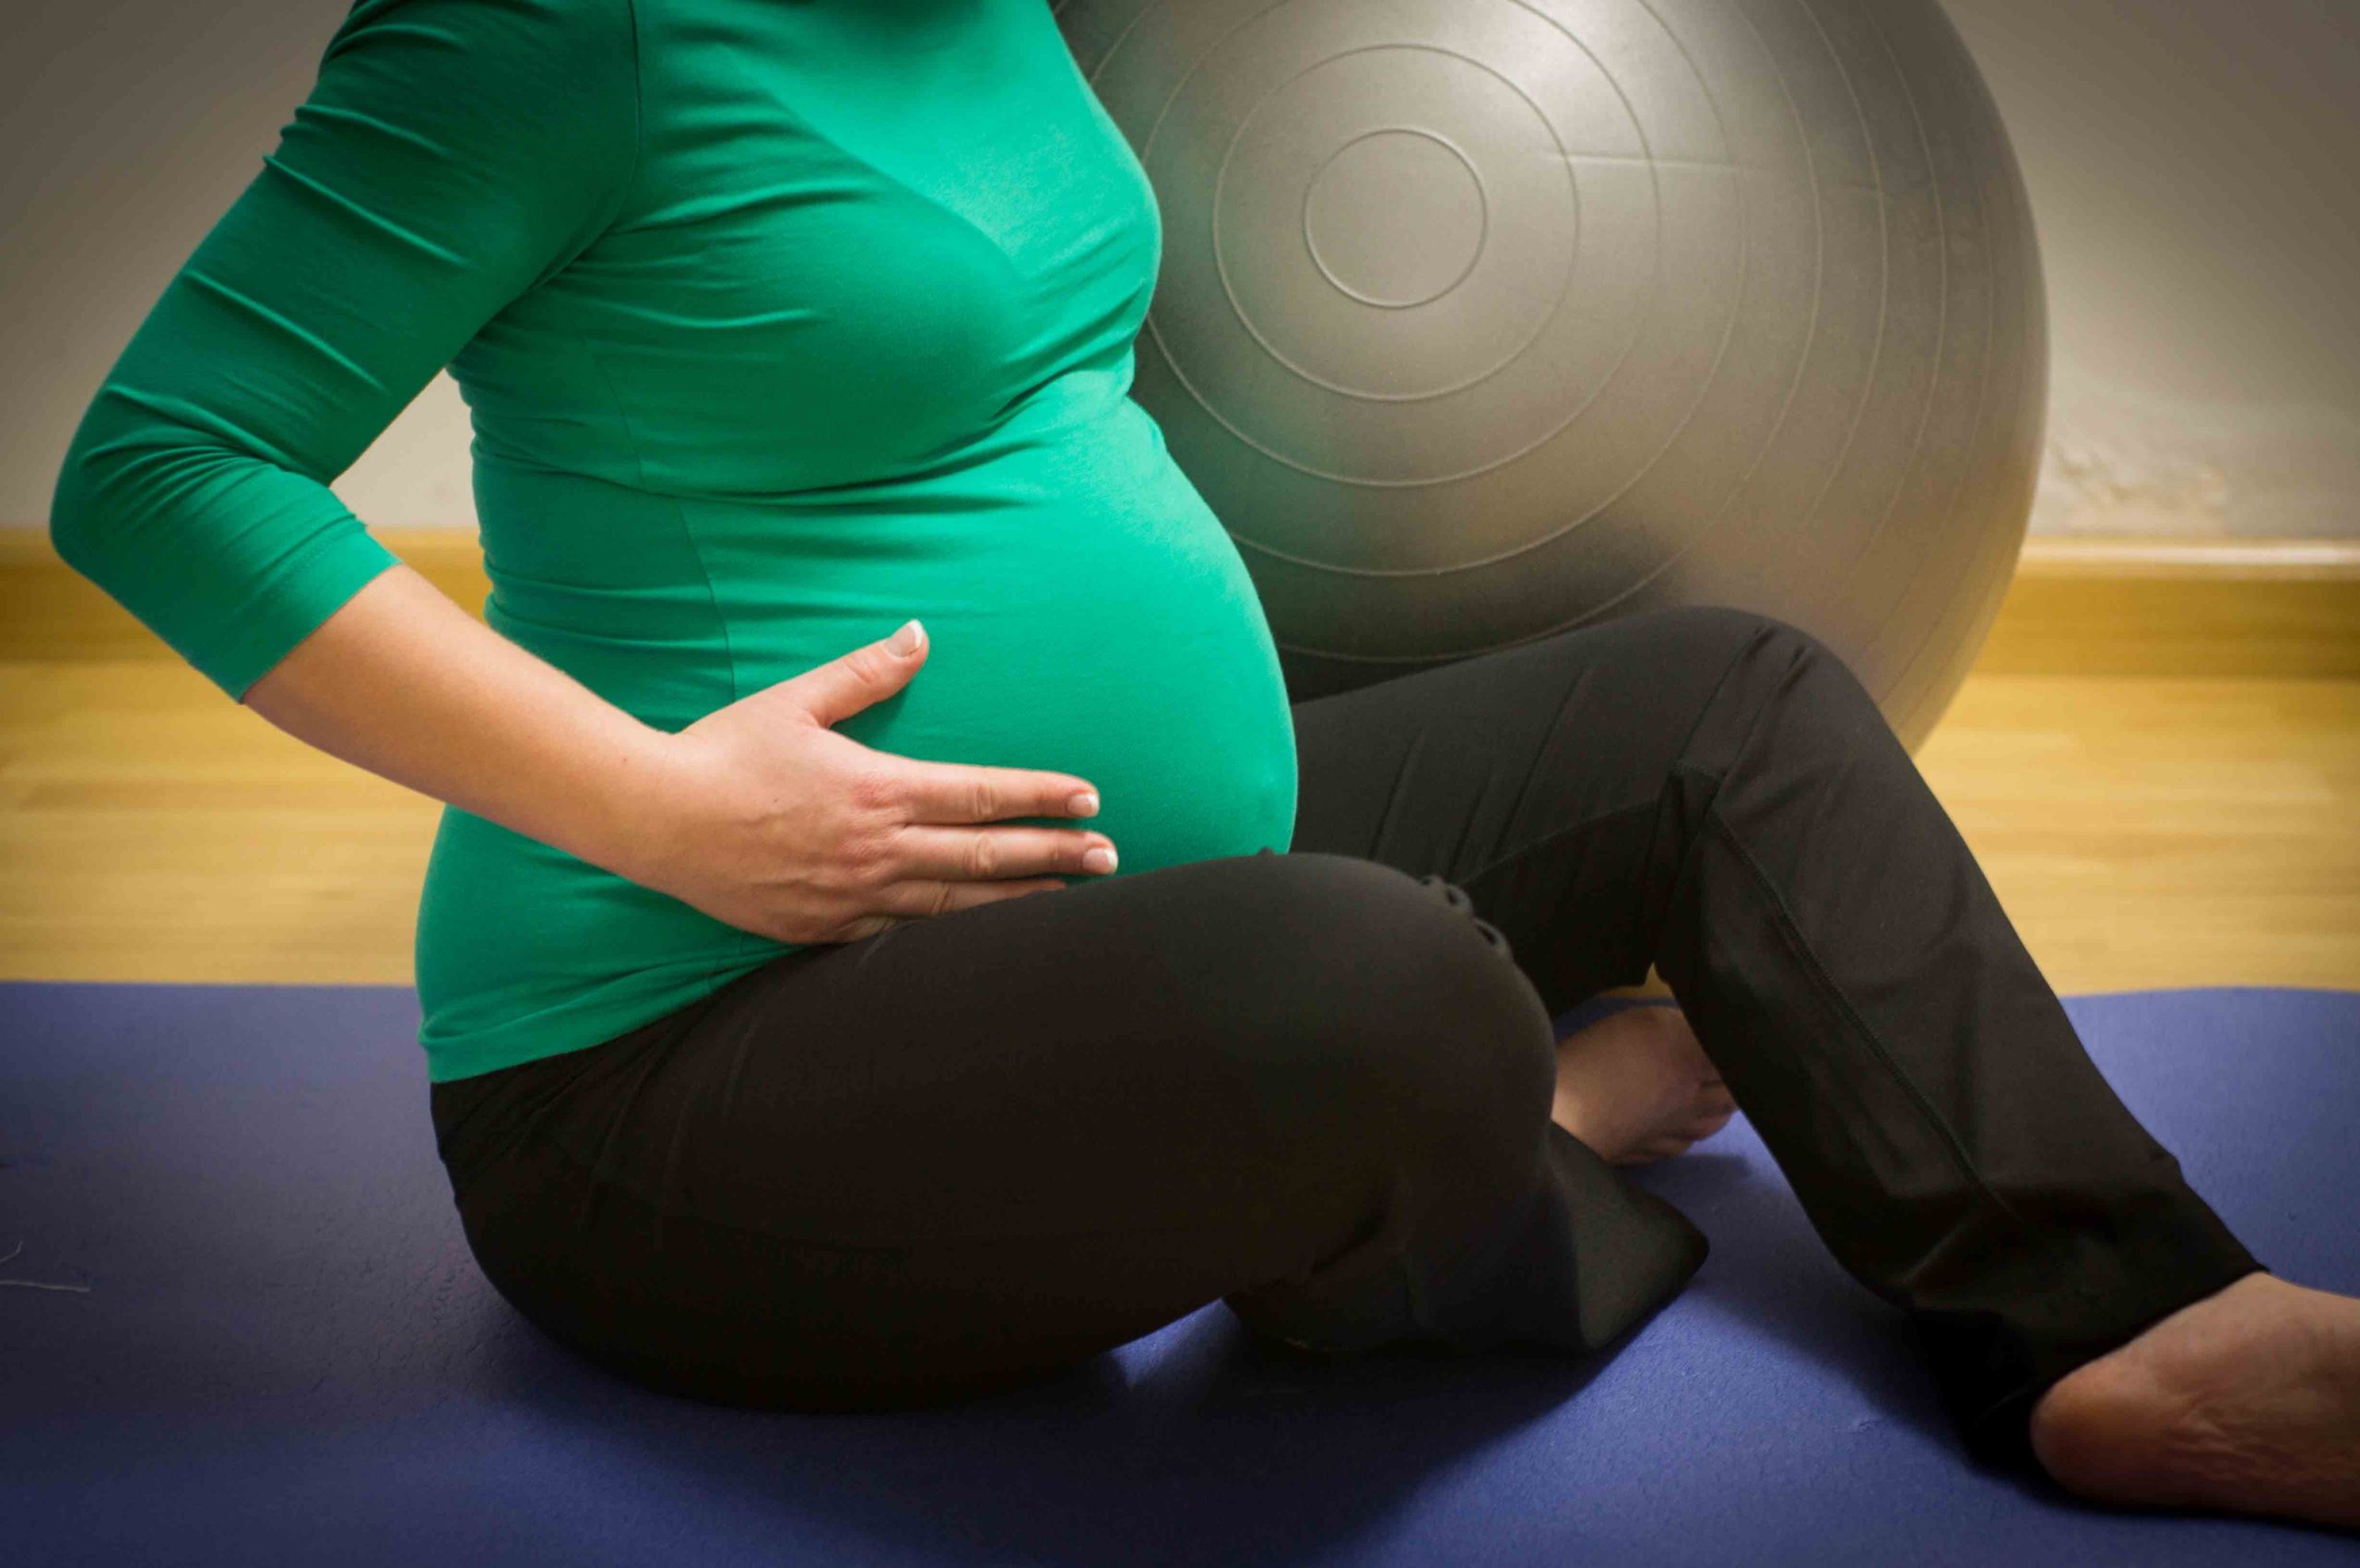 22 неделя беременности тянет. Pregnancy and крытые. Беременные с силовыми нагрузками. Pregnant exercises. Pregnant exercise.